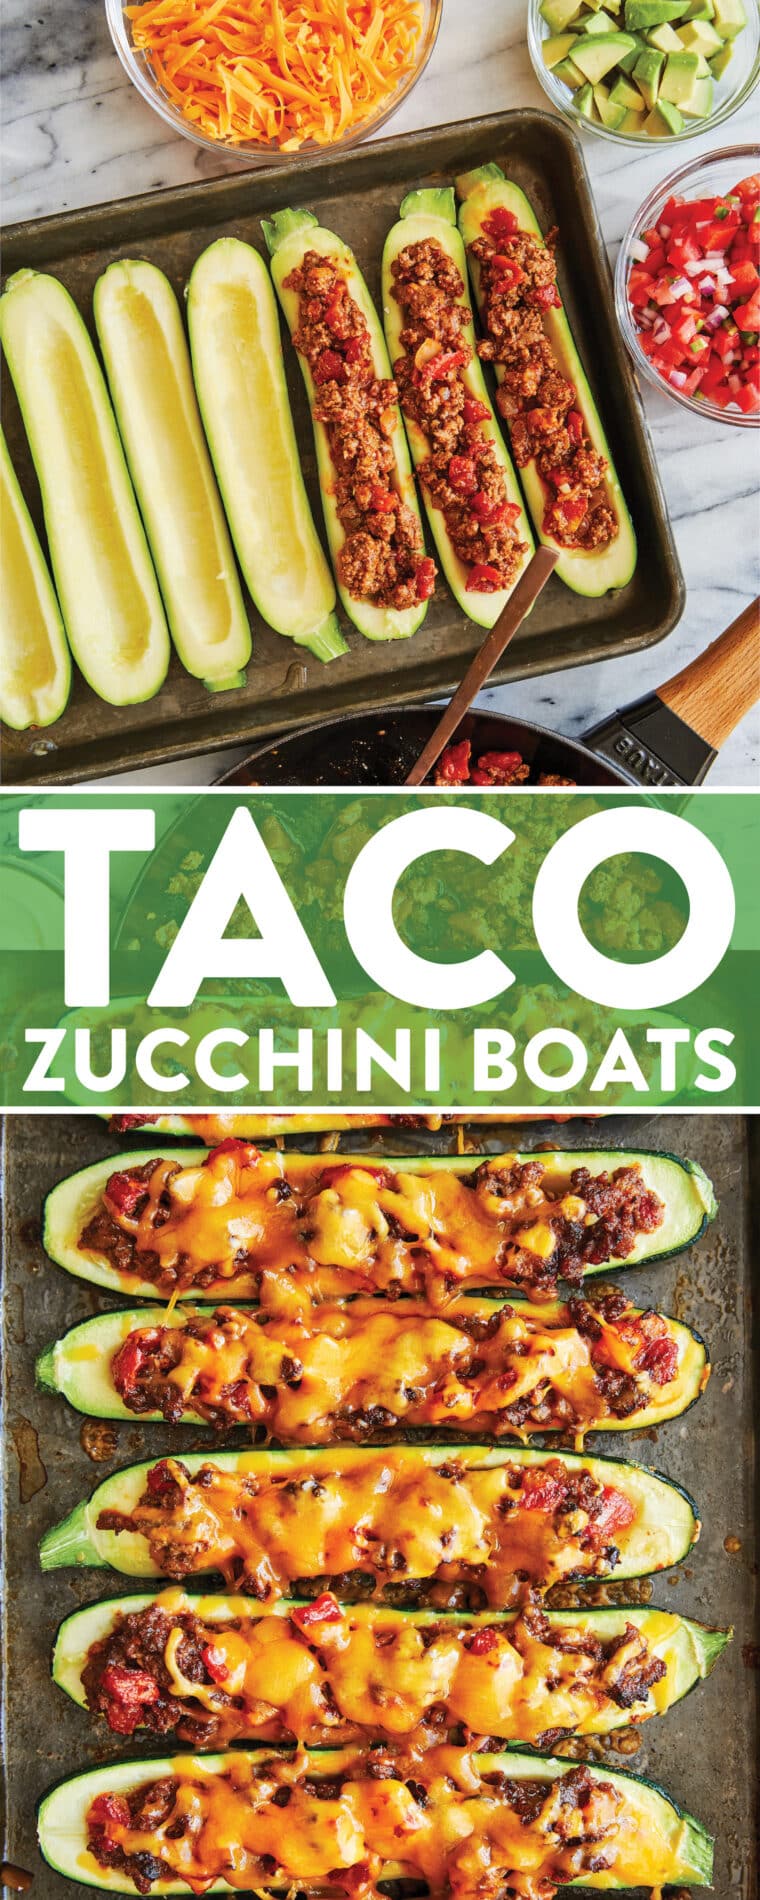 Taco Zucchini Boats - Ett lågkolhydratmiddagsrecept för hela familjen!  Fylld med nötfärs och tacokrydda, bakad till ostlik perfektion.